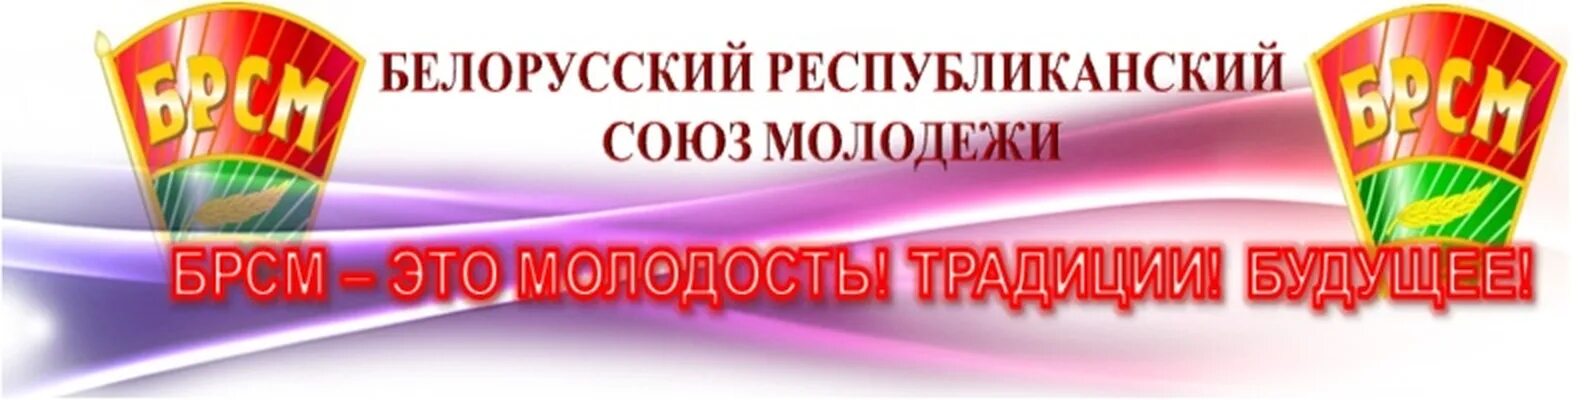 Белорусский республиканский союз. Белорусский Республиканский Союз молодёжи. БРСМ это общественная организация. Союз молодежи.